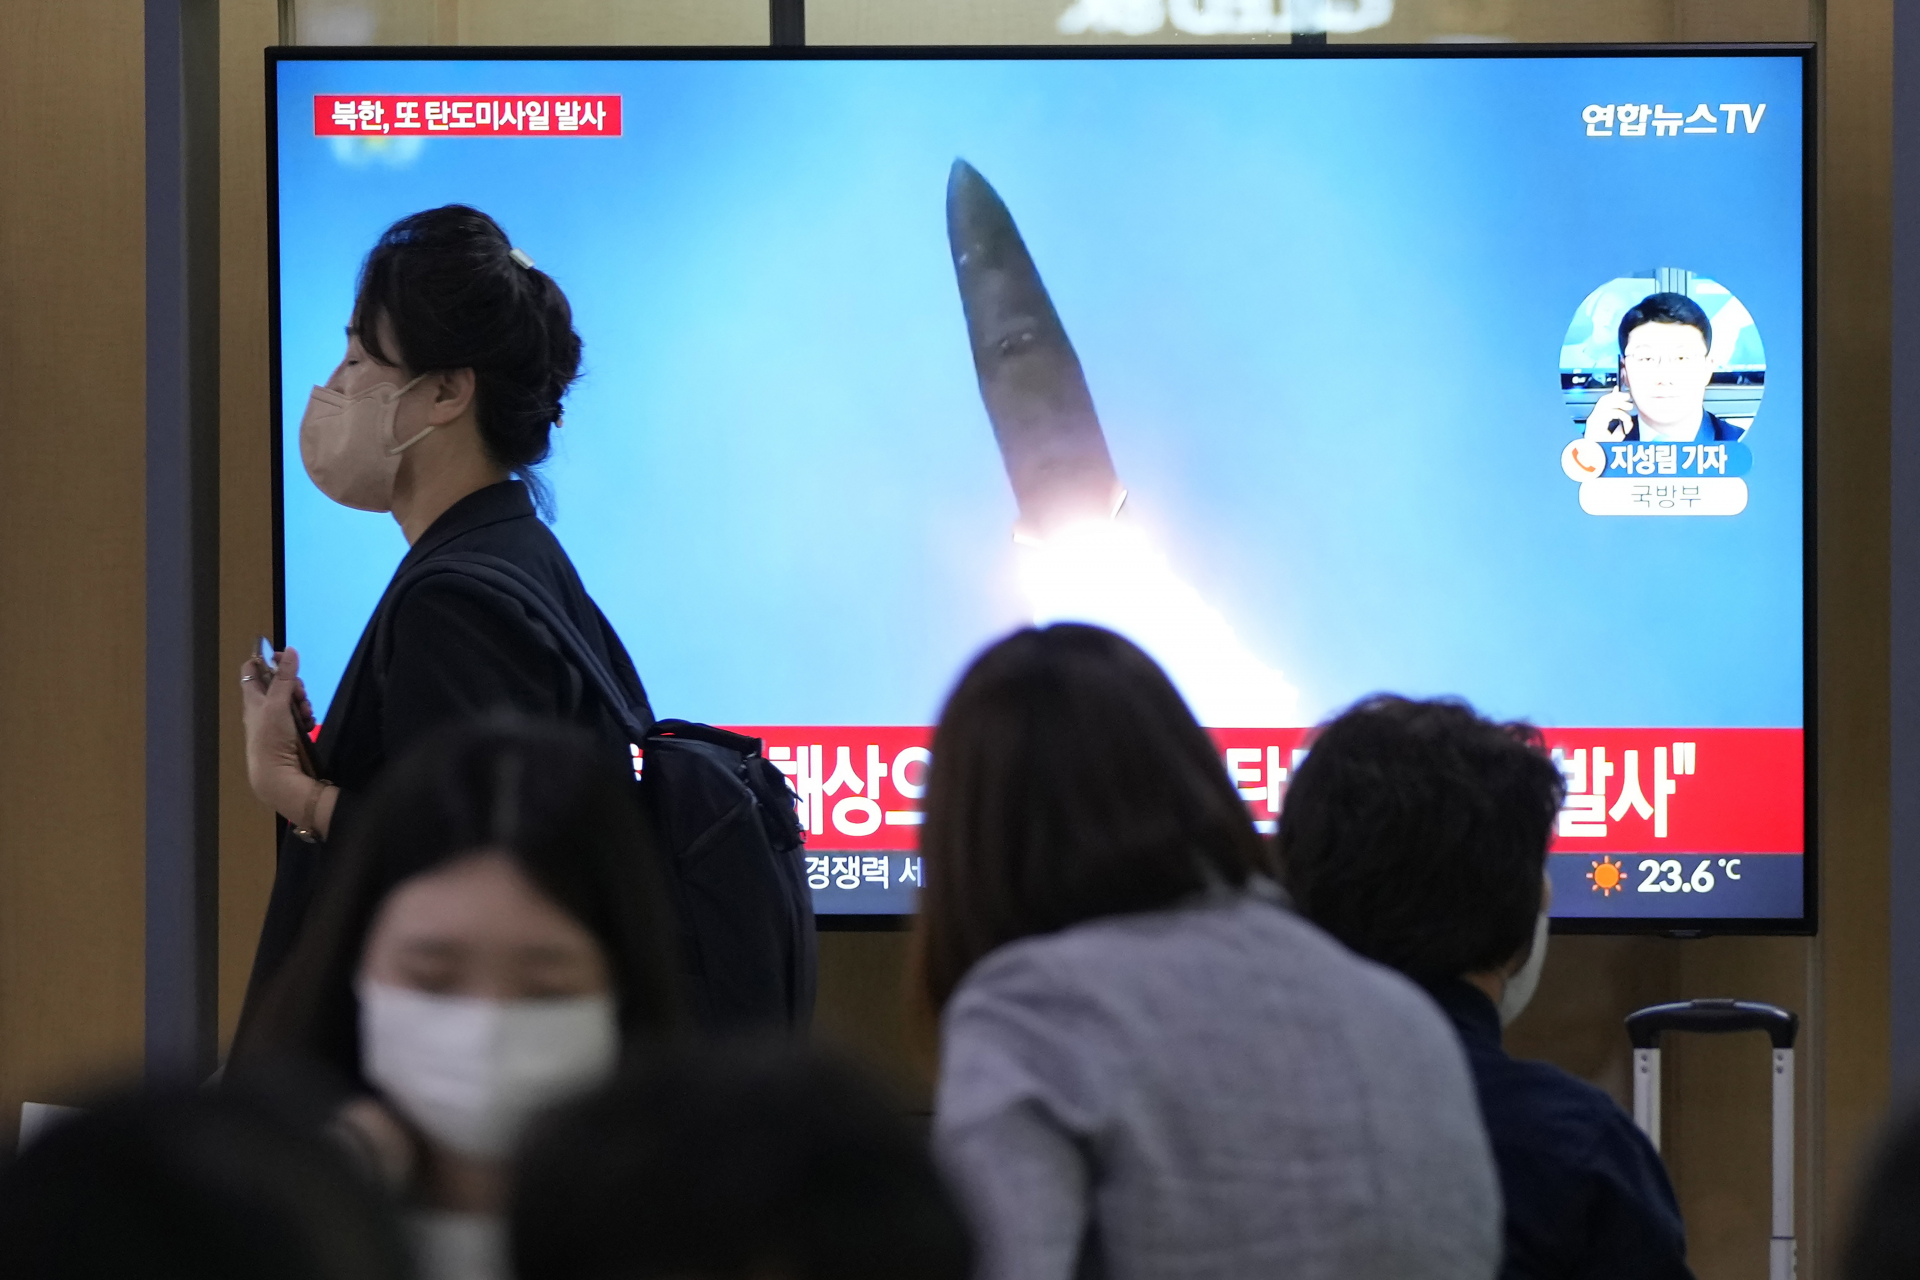 Észak-koreai ballisztikus rakétakilövés